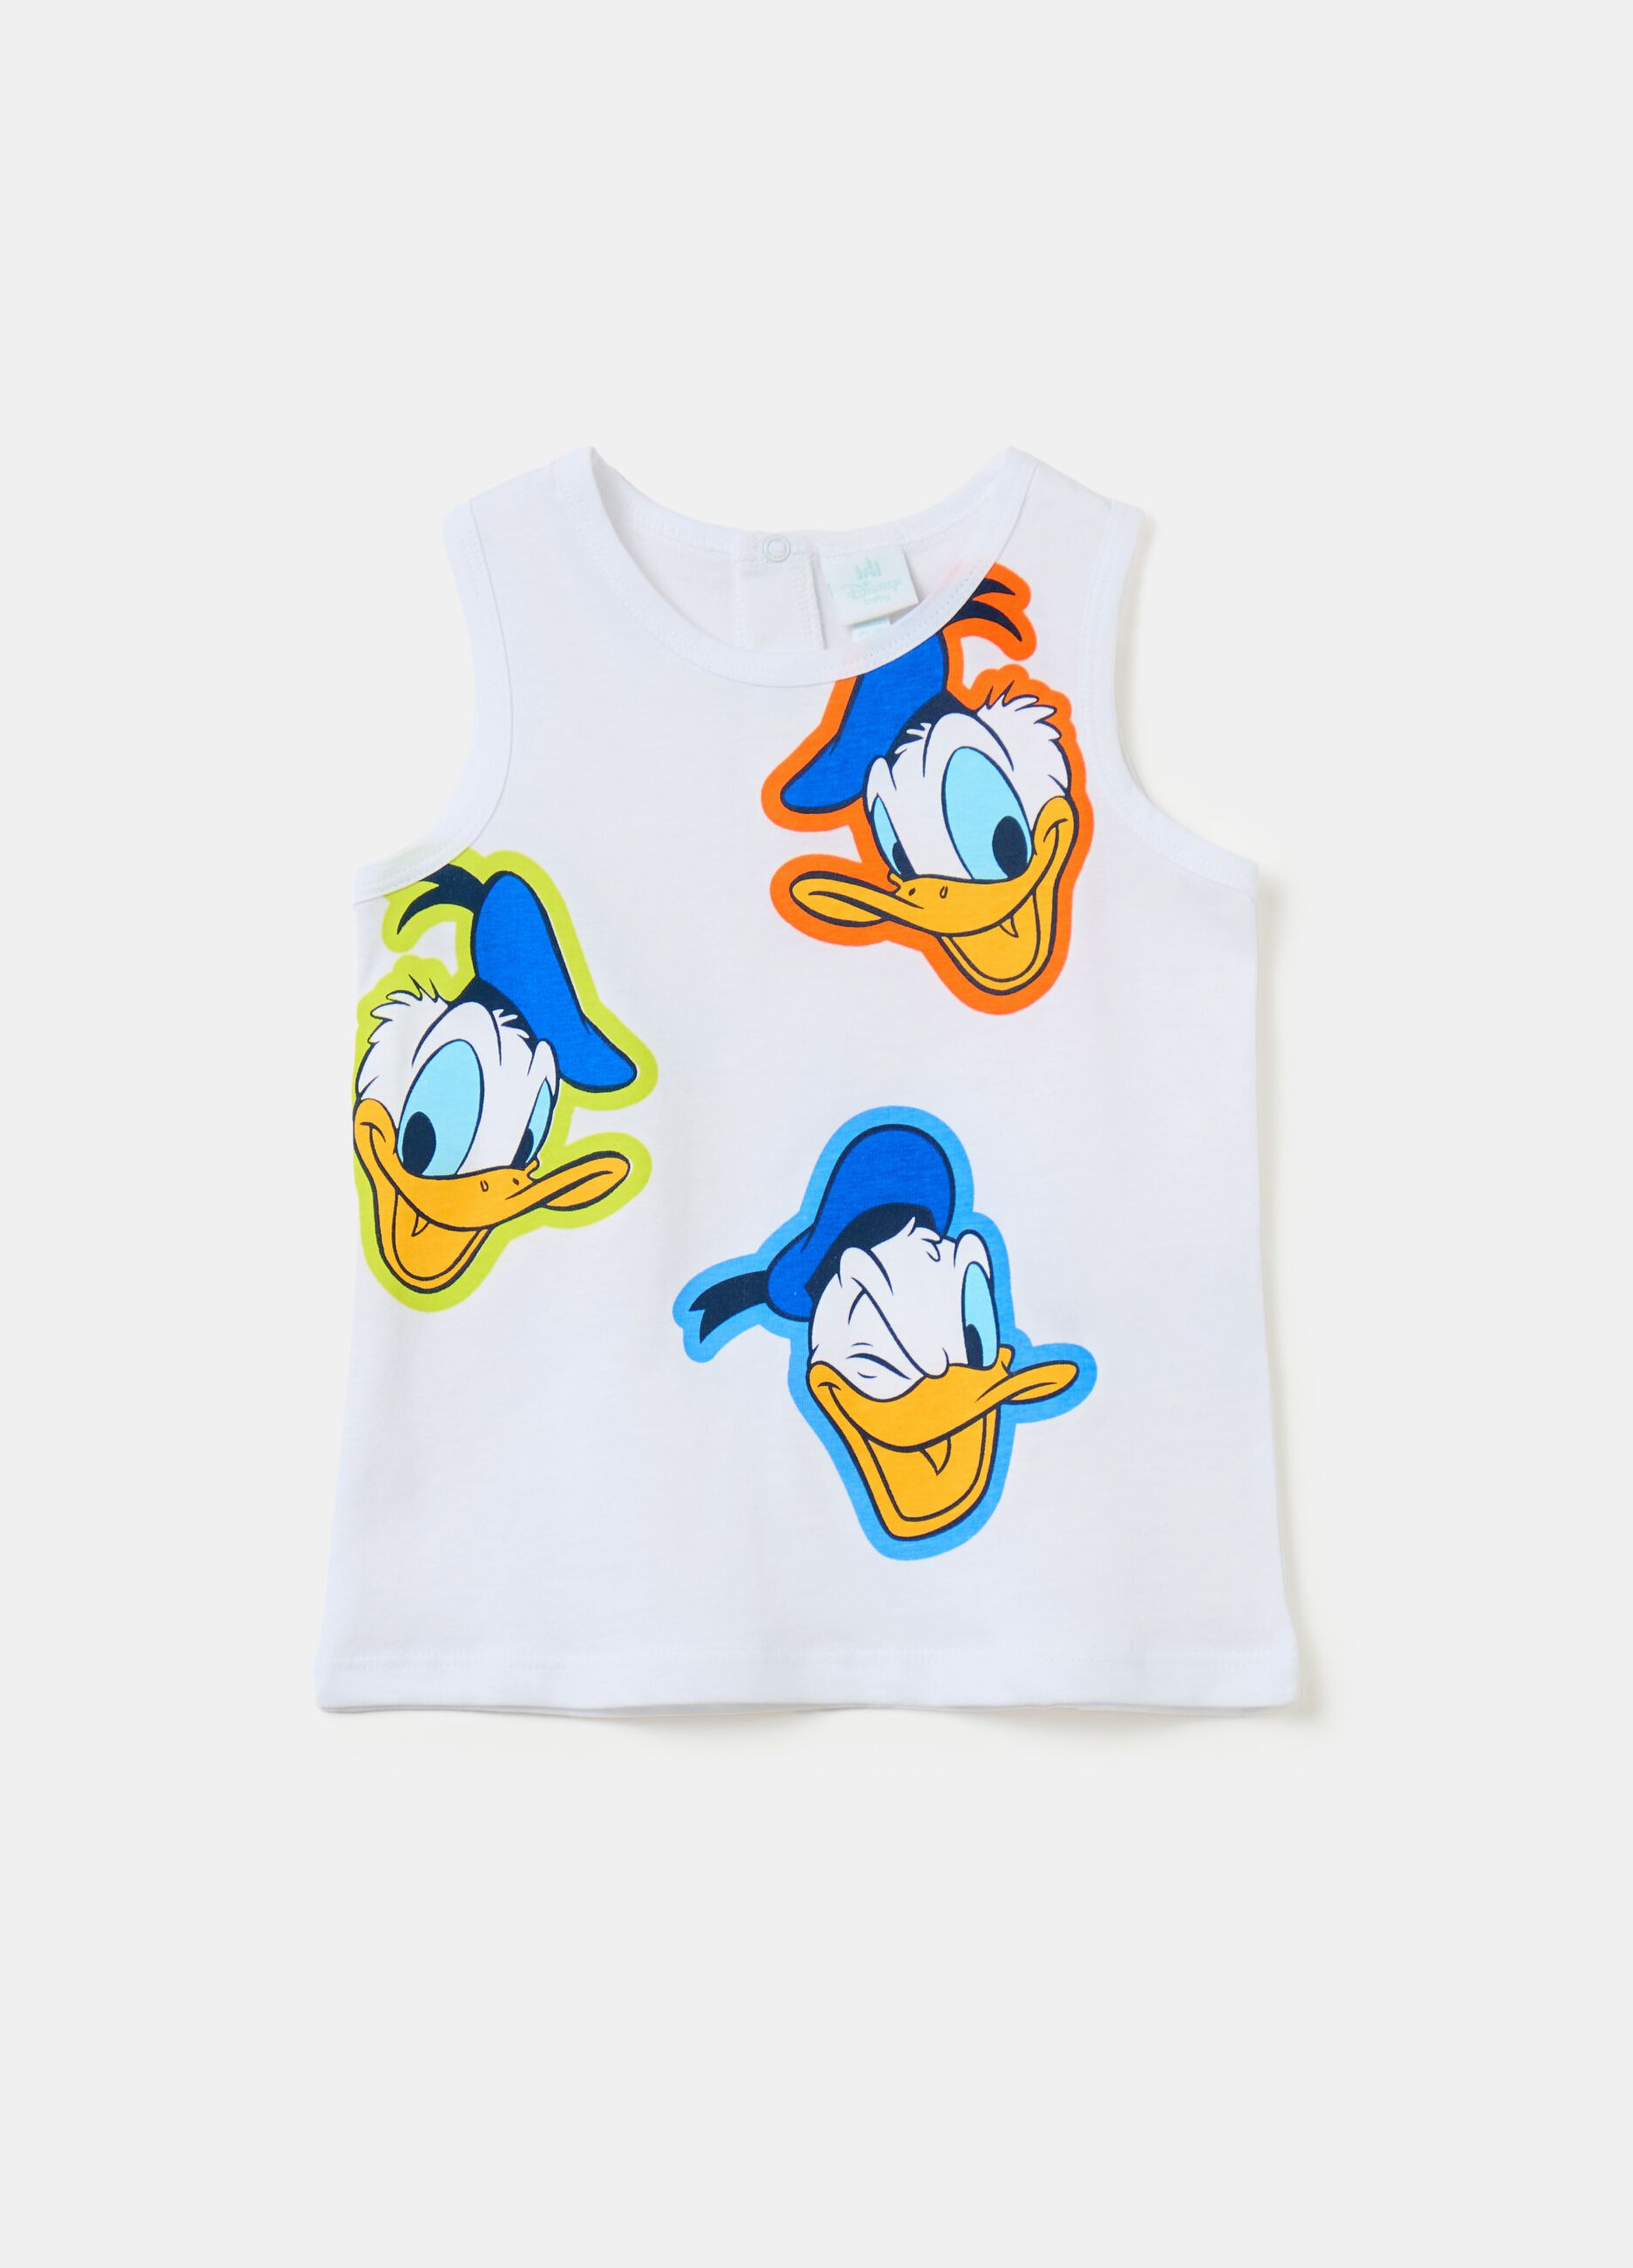 Cotton racerback vest with Donald Duck 90 print